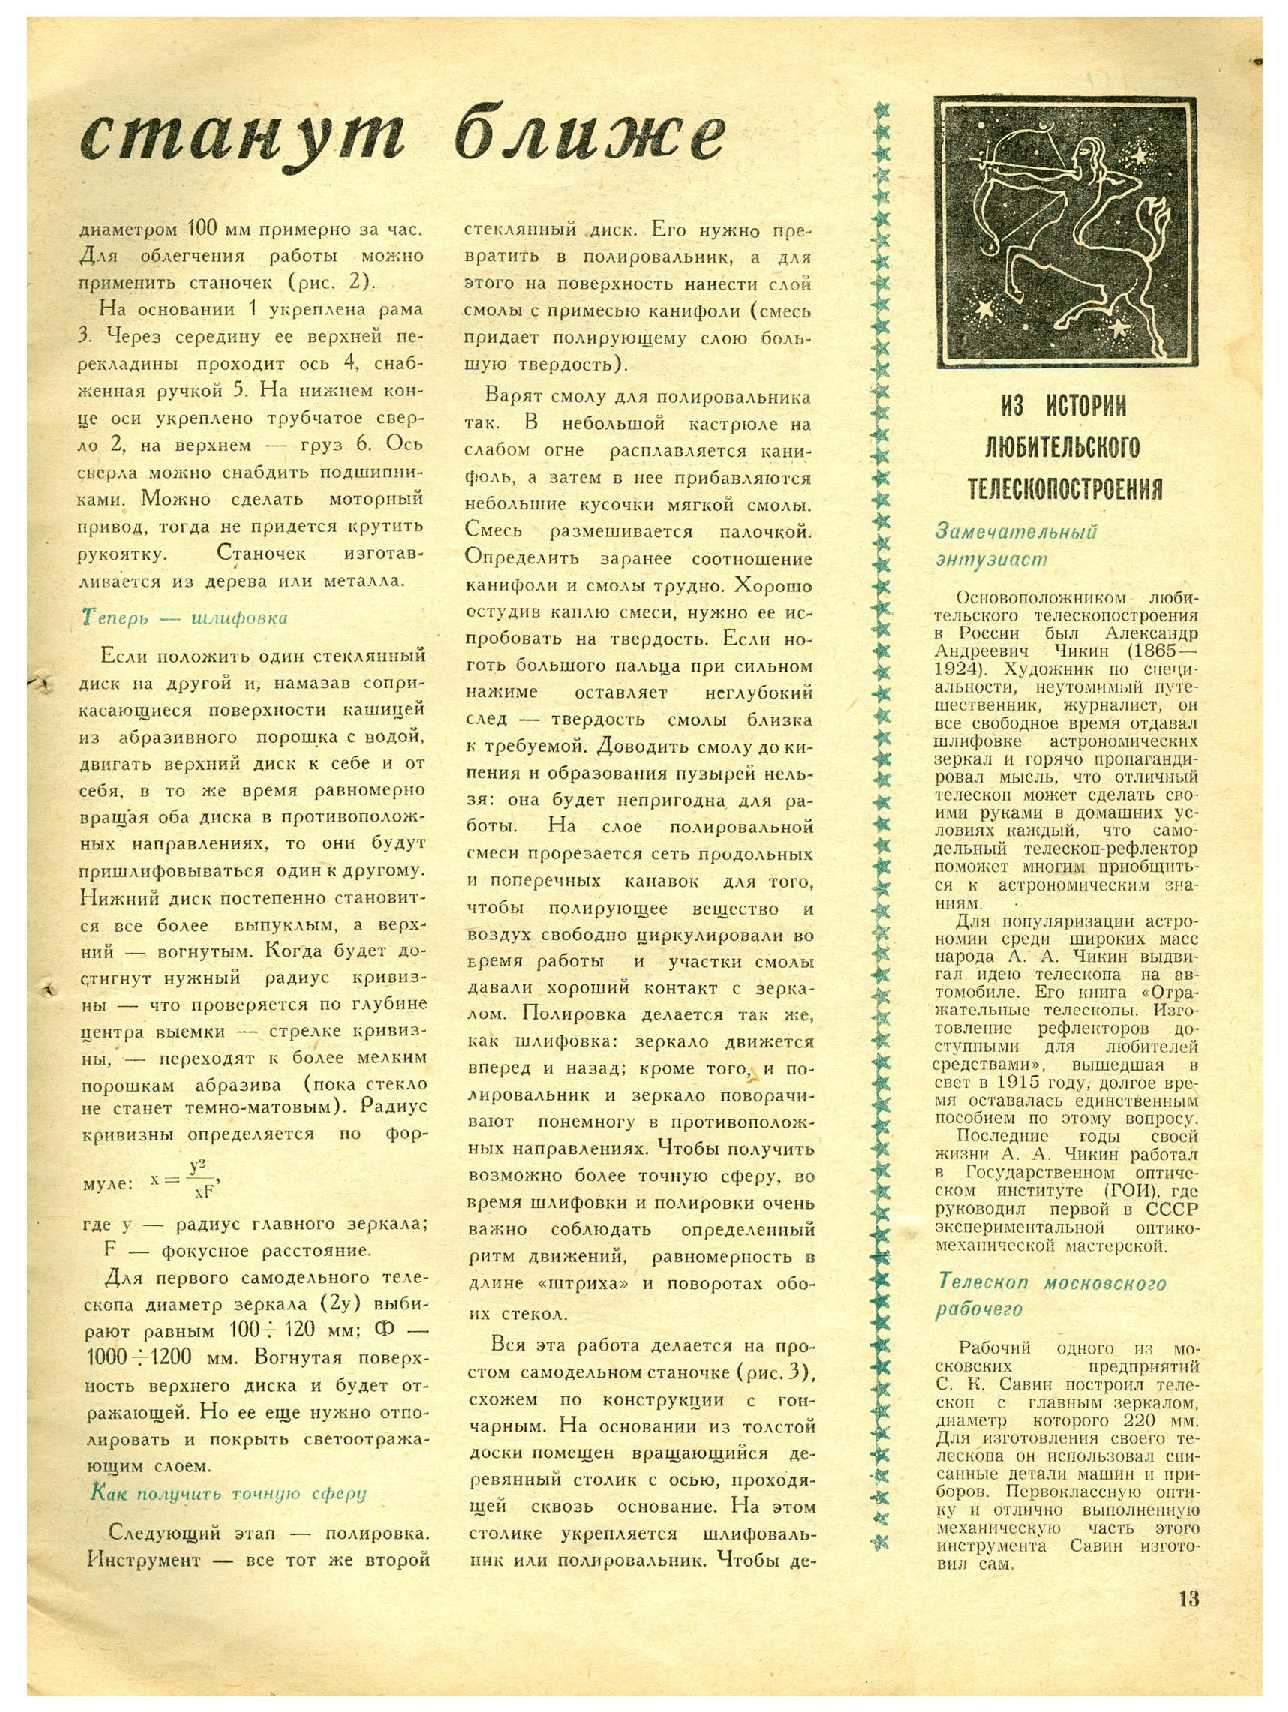 МК 5, 1966, 13 c.